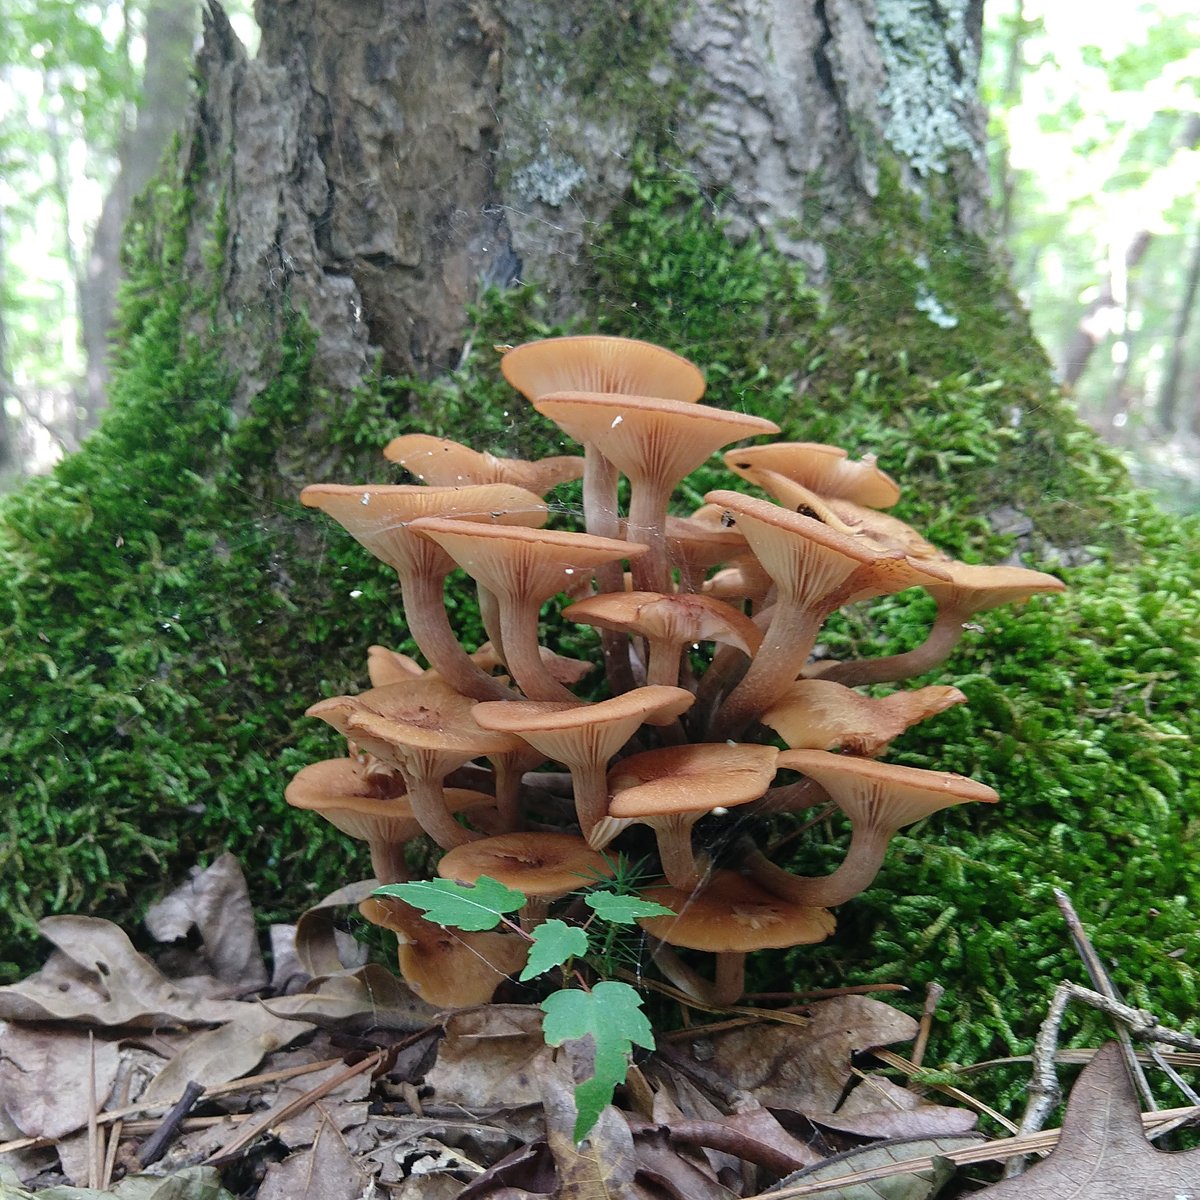 Wild Mushroom Certification